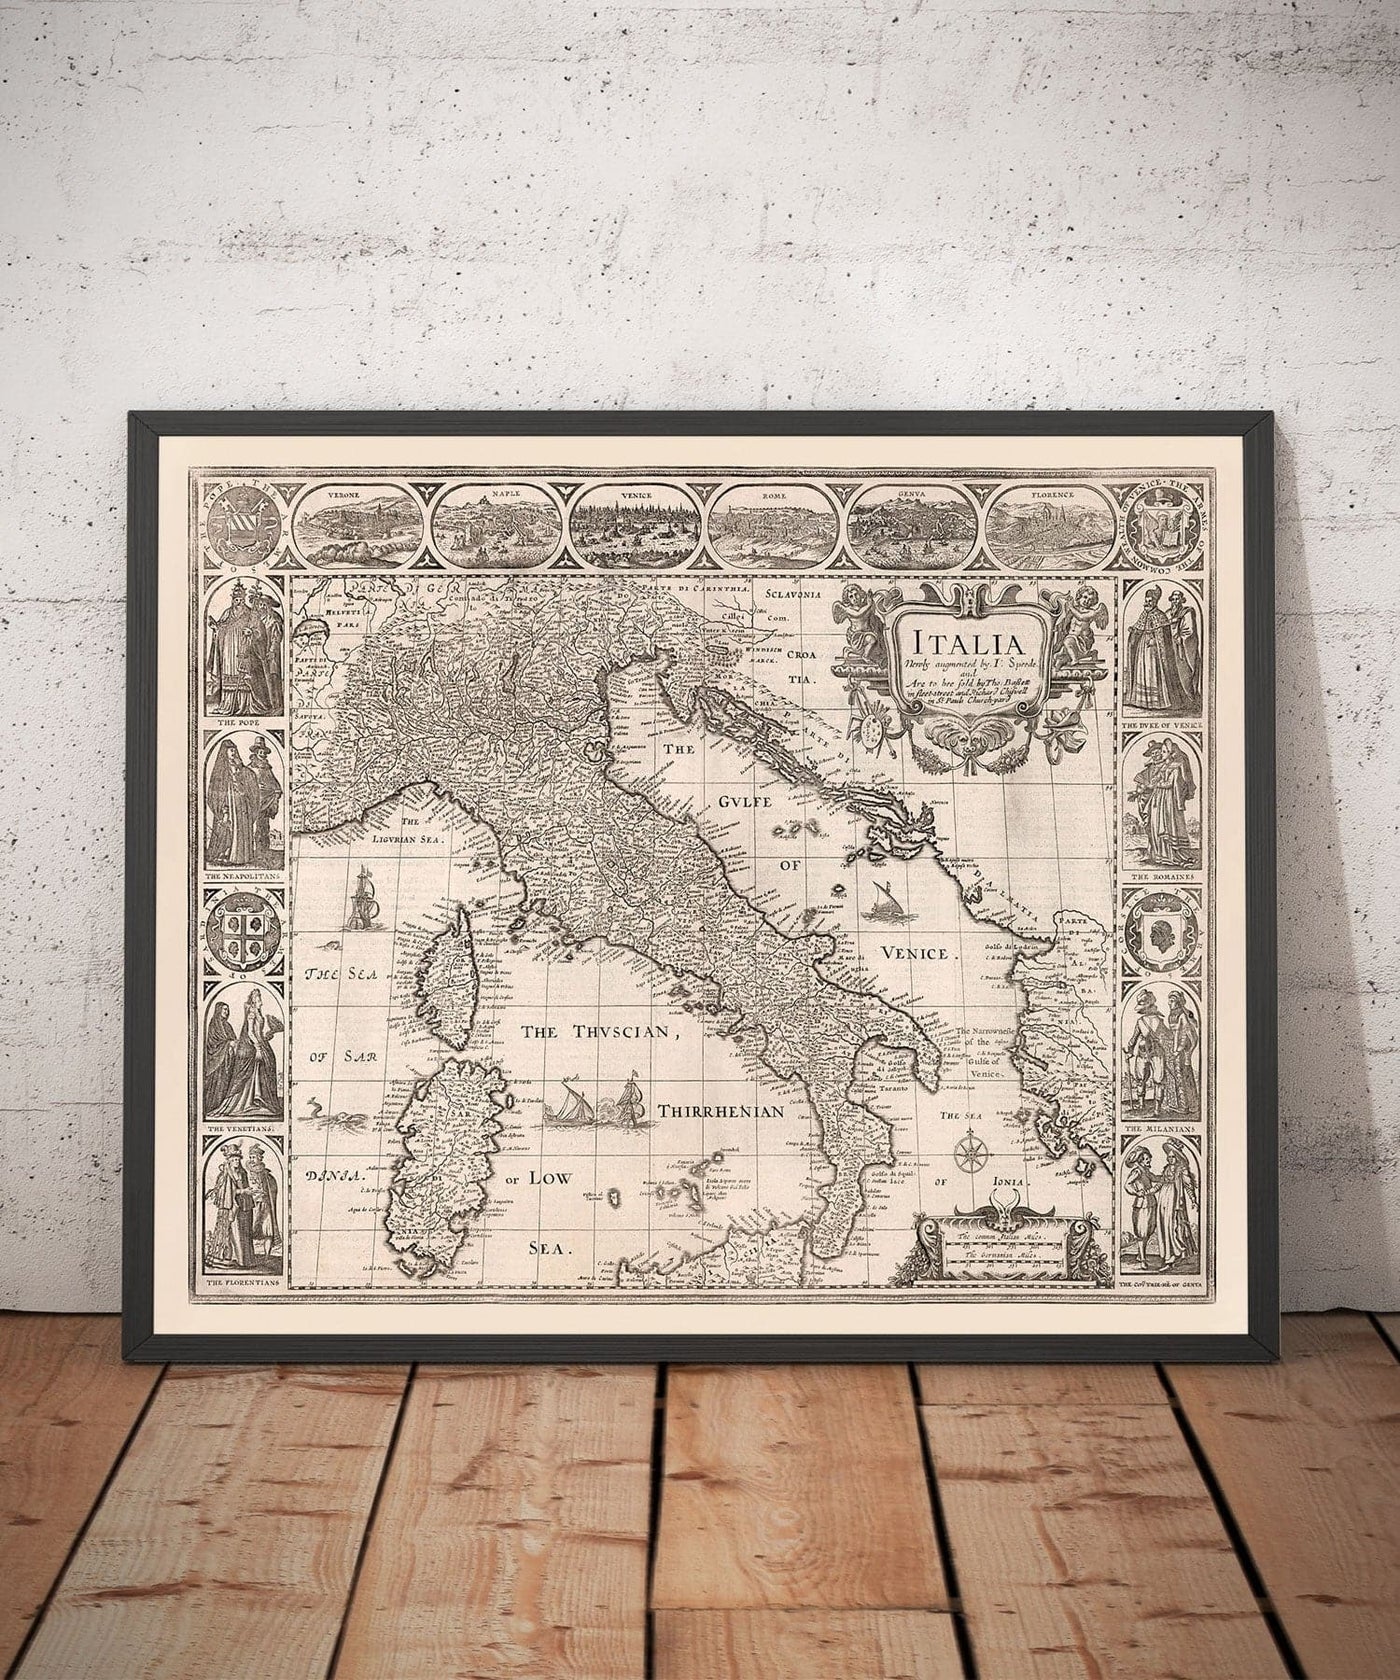 Vieille carte monochrome de l'Italie, 1627 de John Vitesse - Corse, Sardaigne, Sicile, Venise, Rome, Le pape